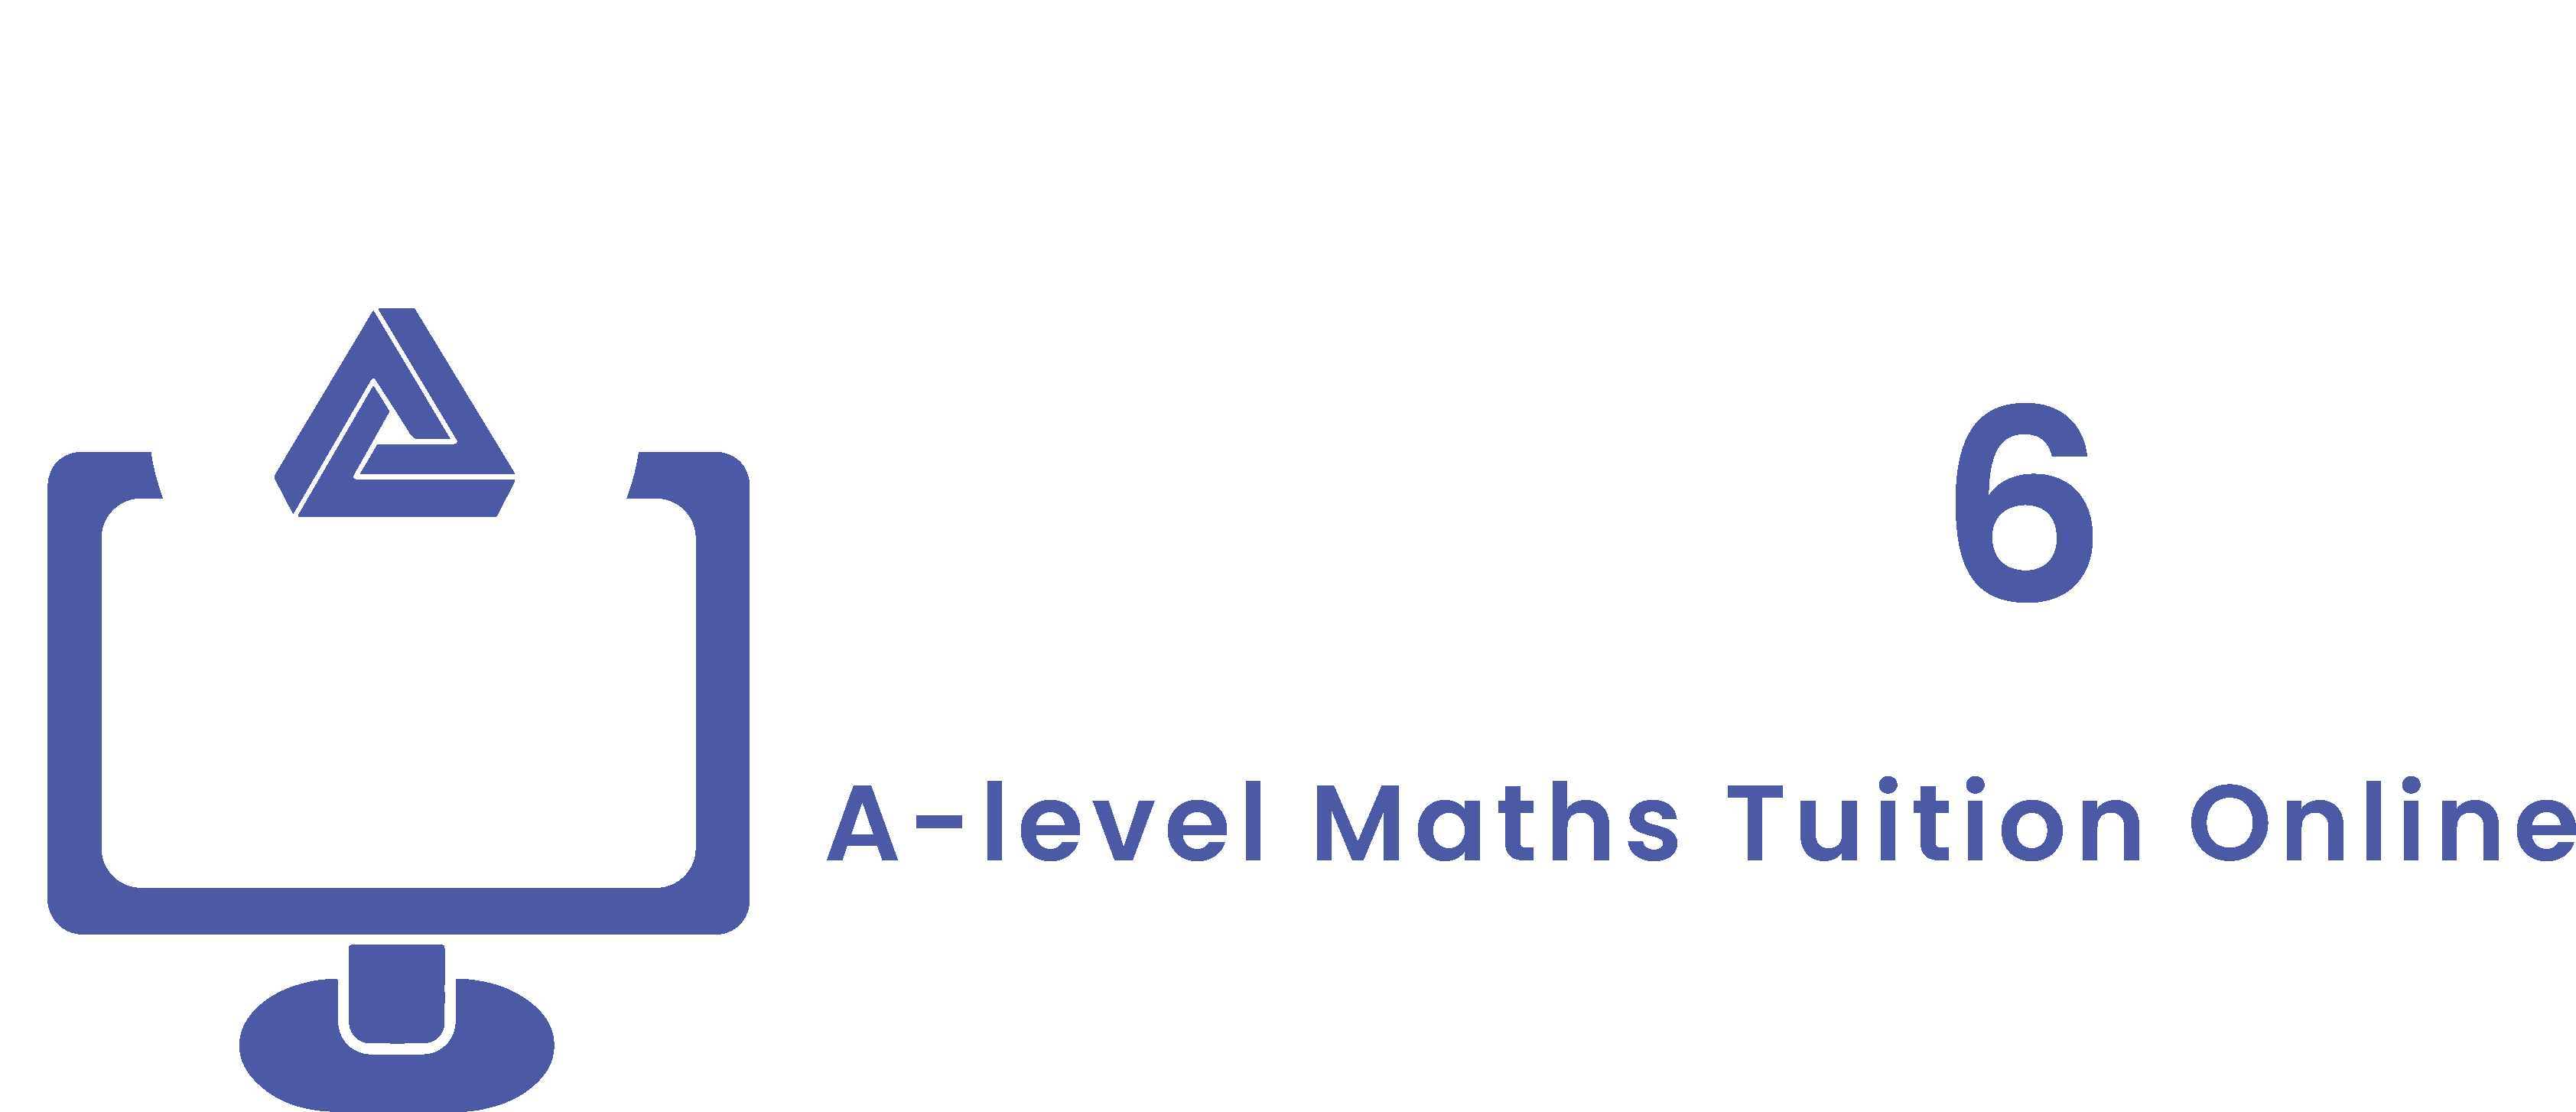 Maths6 provides A-level maths and further maths online tutoring